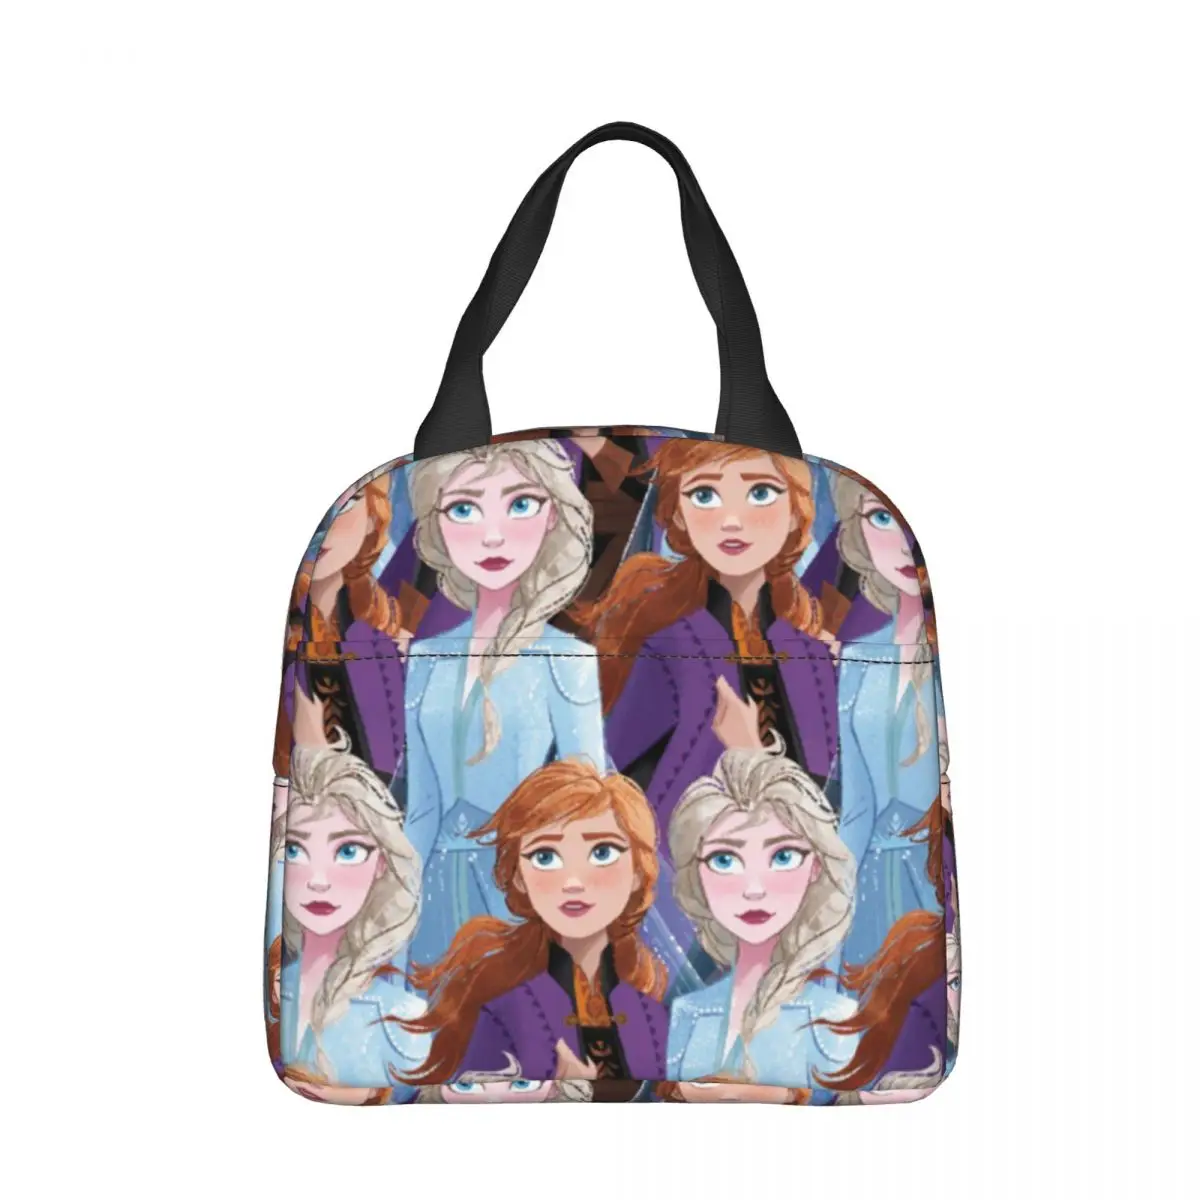 Disney Frozen Elsa Anna Изолированные сумки для ланча большой емкости Многоразовая сумка-холодильник Ланч-бокс Тотализатор Офис Путешествия Мужчины Женщины . ' - ' . 0